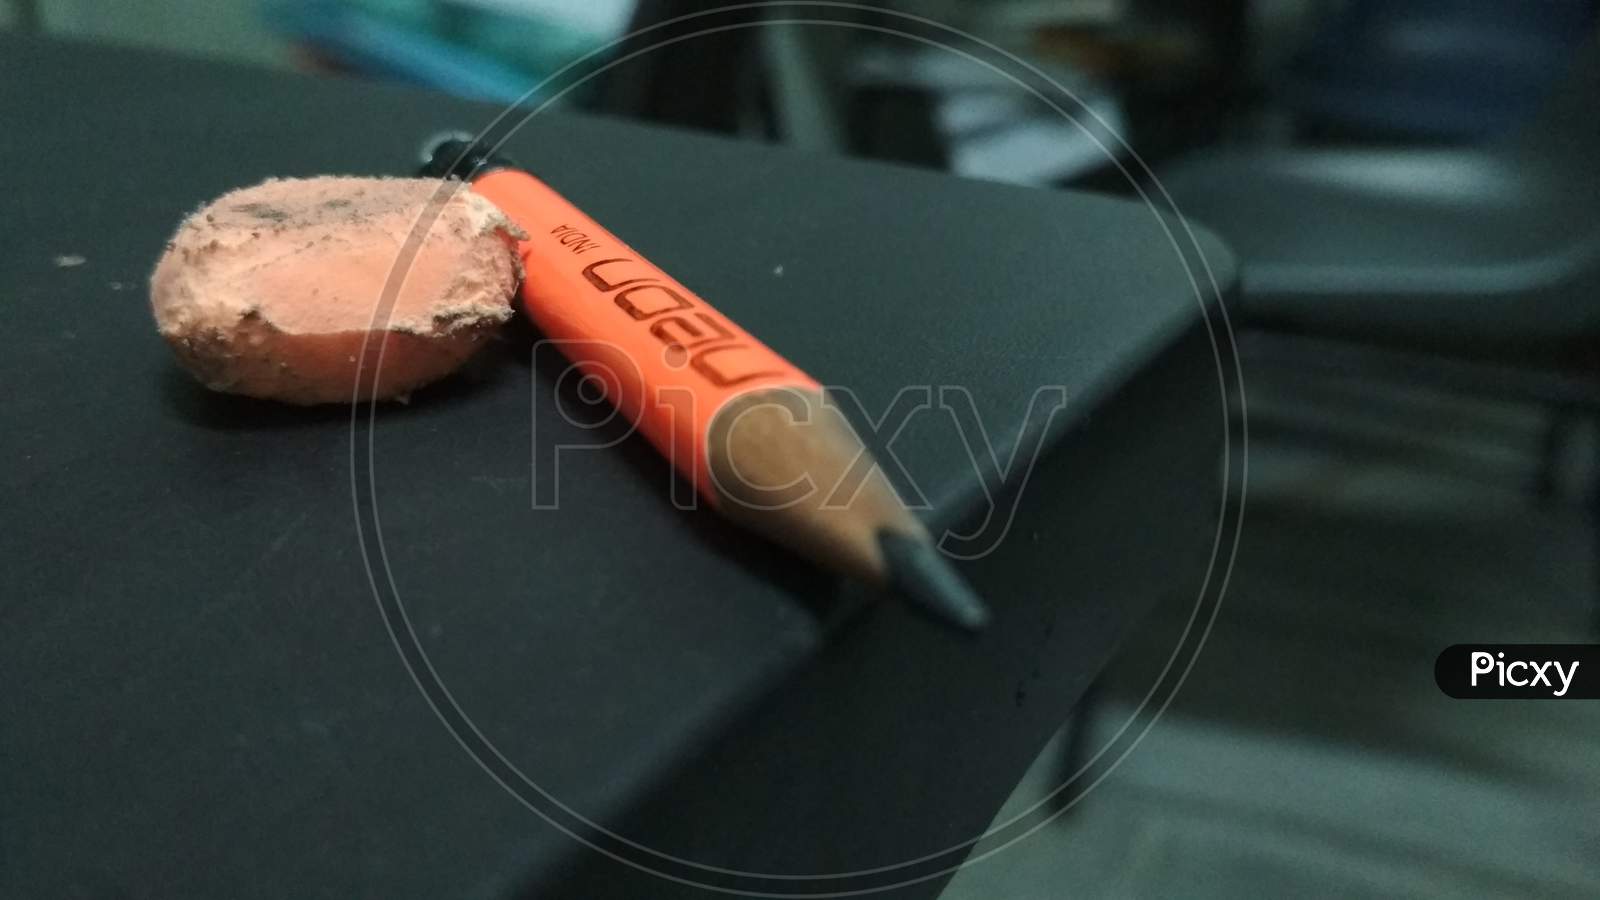 orange pencil